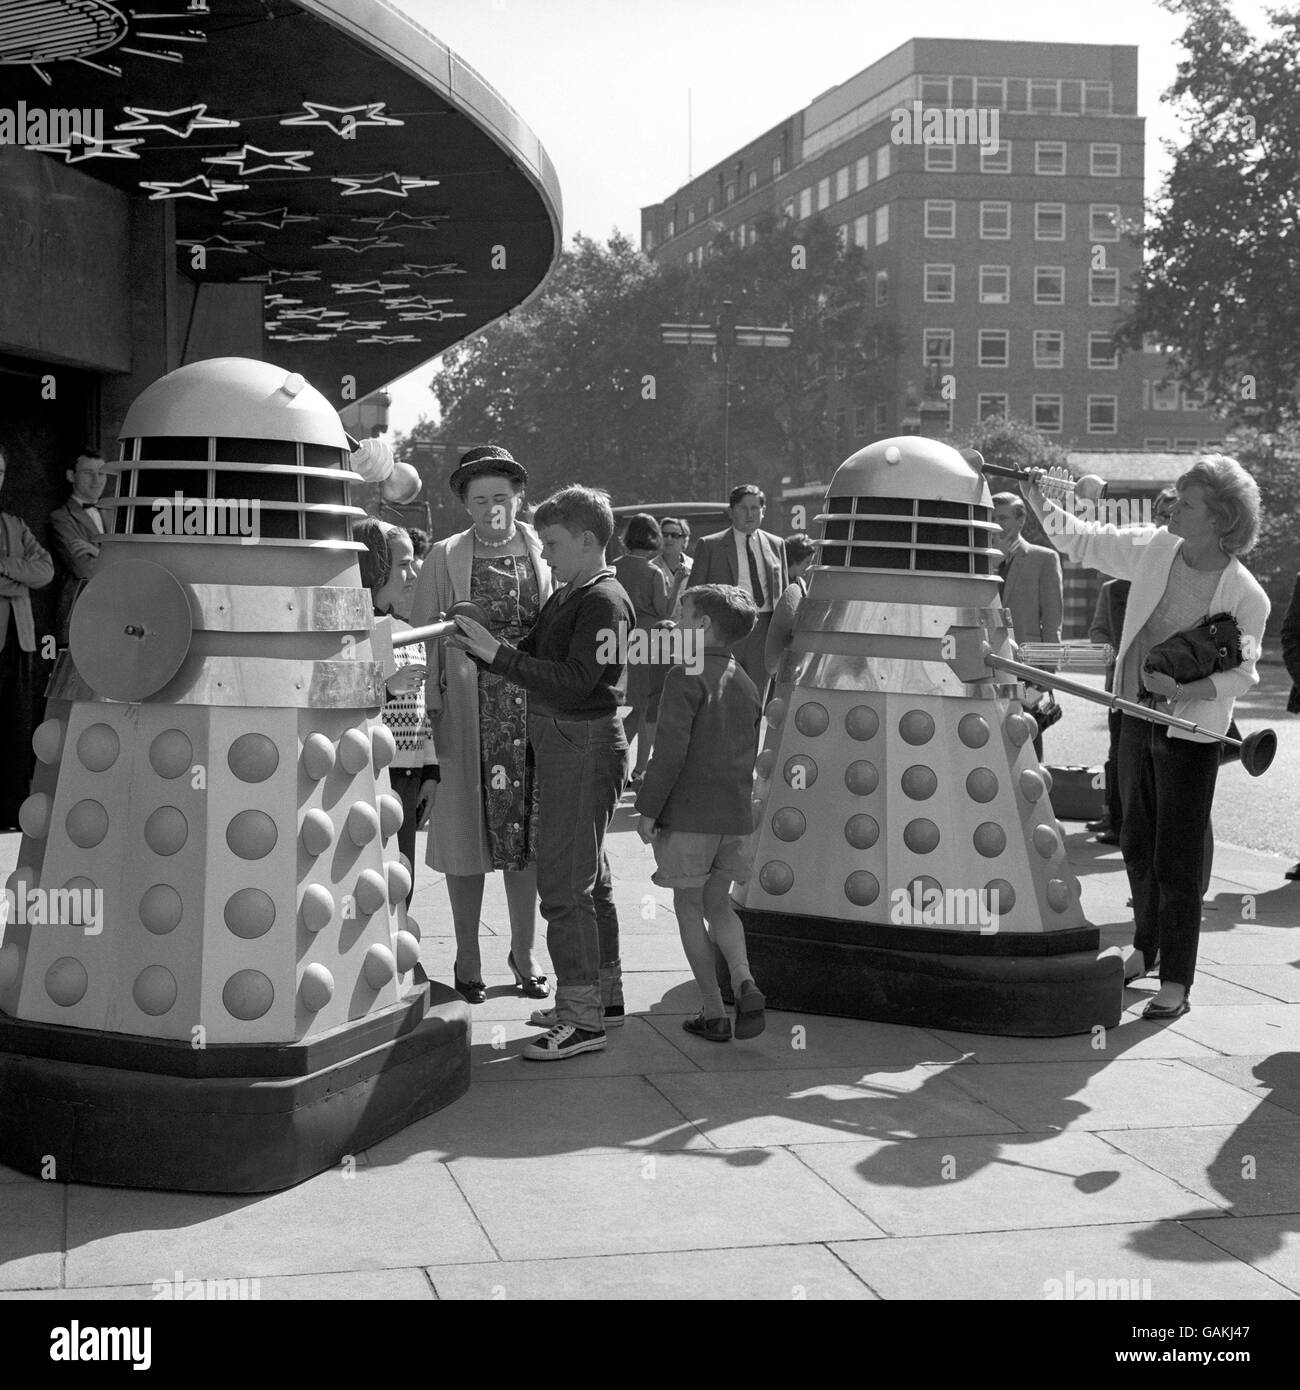 Kinder treffen den Roboter Daleks vor dem Planetarium, Baker Street, während Drehorte für eine neue Serie. Stockfoto